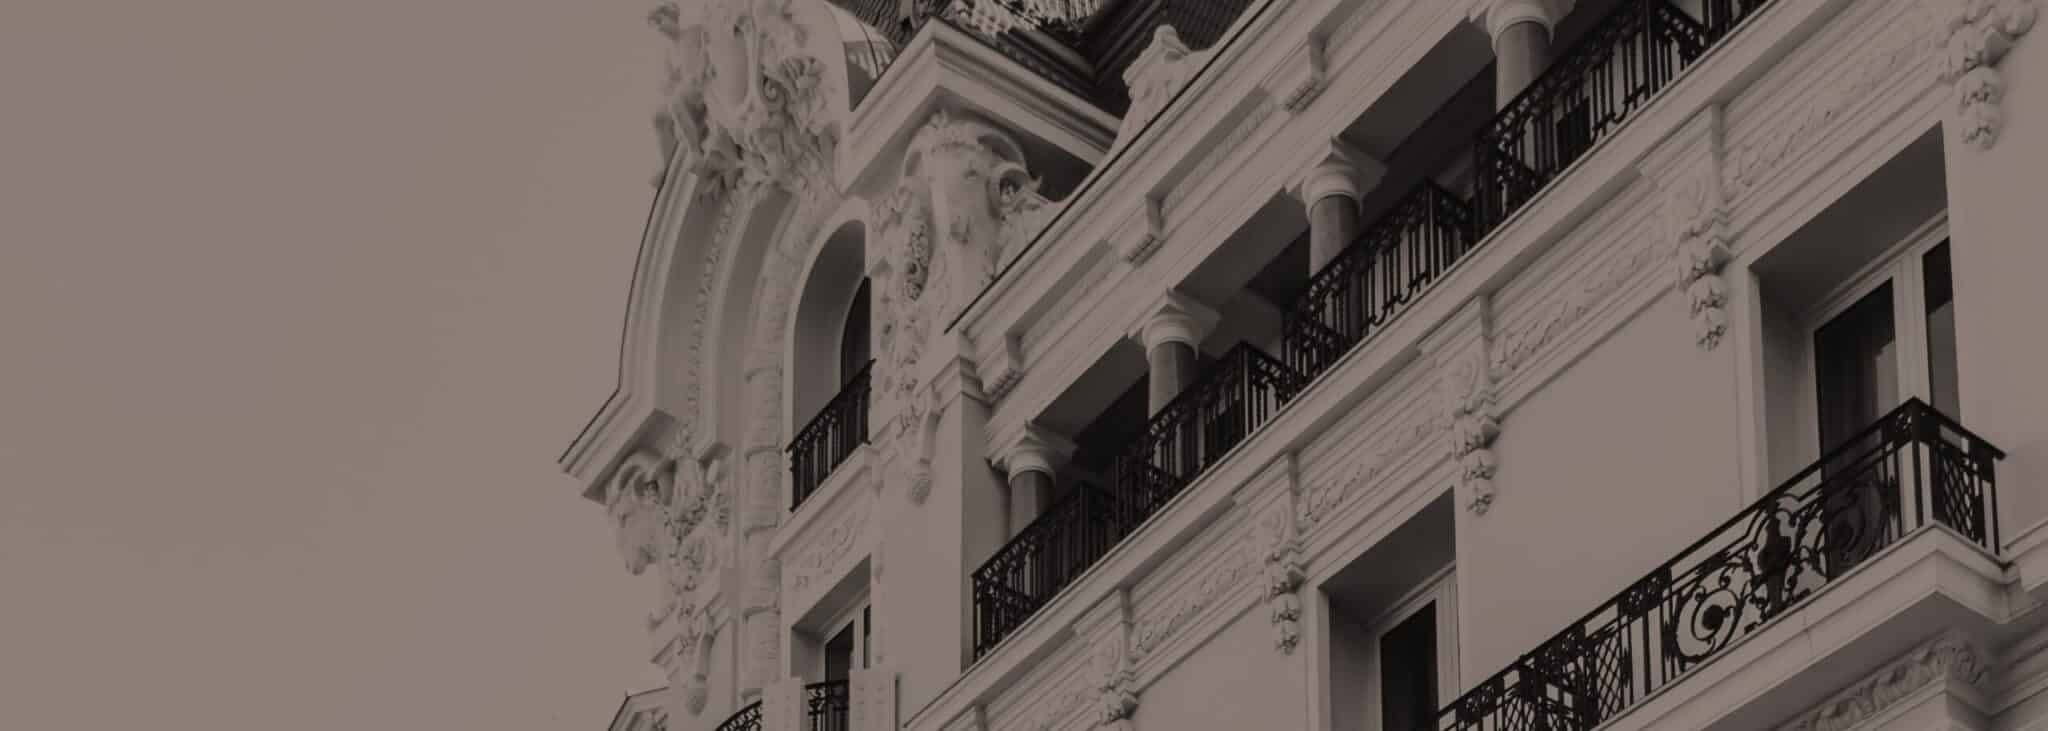 Upper Black and white picture of Hotel de Paris Monte Carlo